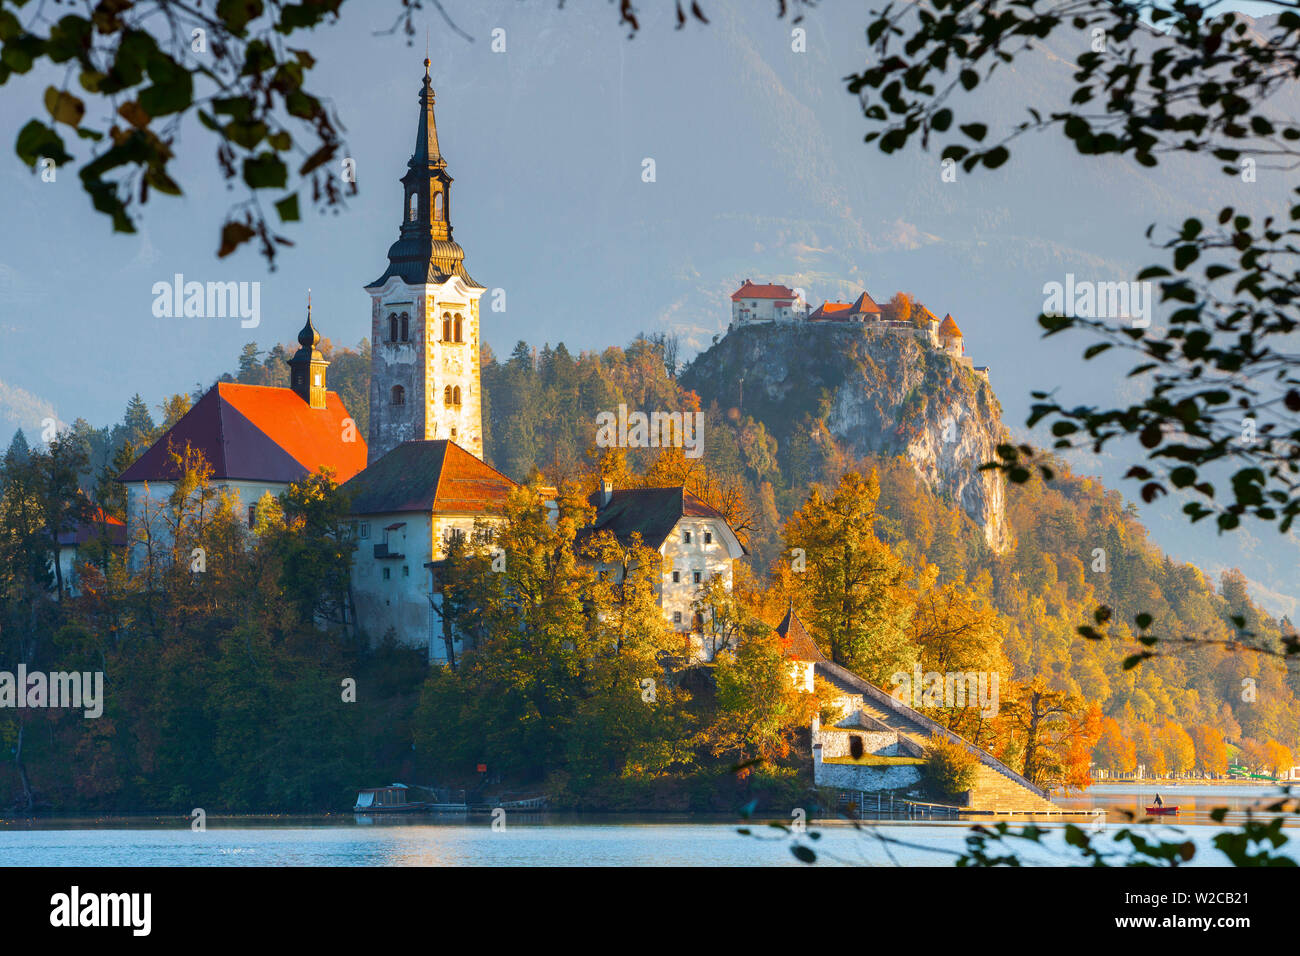 Die Insel (Blejski otok) mit der Kirche Mariä Himmelfahrt (Cerkev Marijinega vnebovzetja) & Burg von Bled beleuchtet bei Sonnenaufgang, der See von Bled, Bled, Obere Krain, Julische Alpen, Slowenien Stockfoto